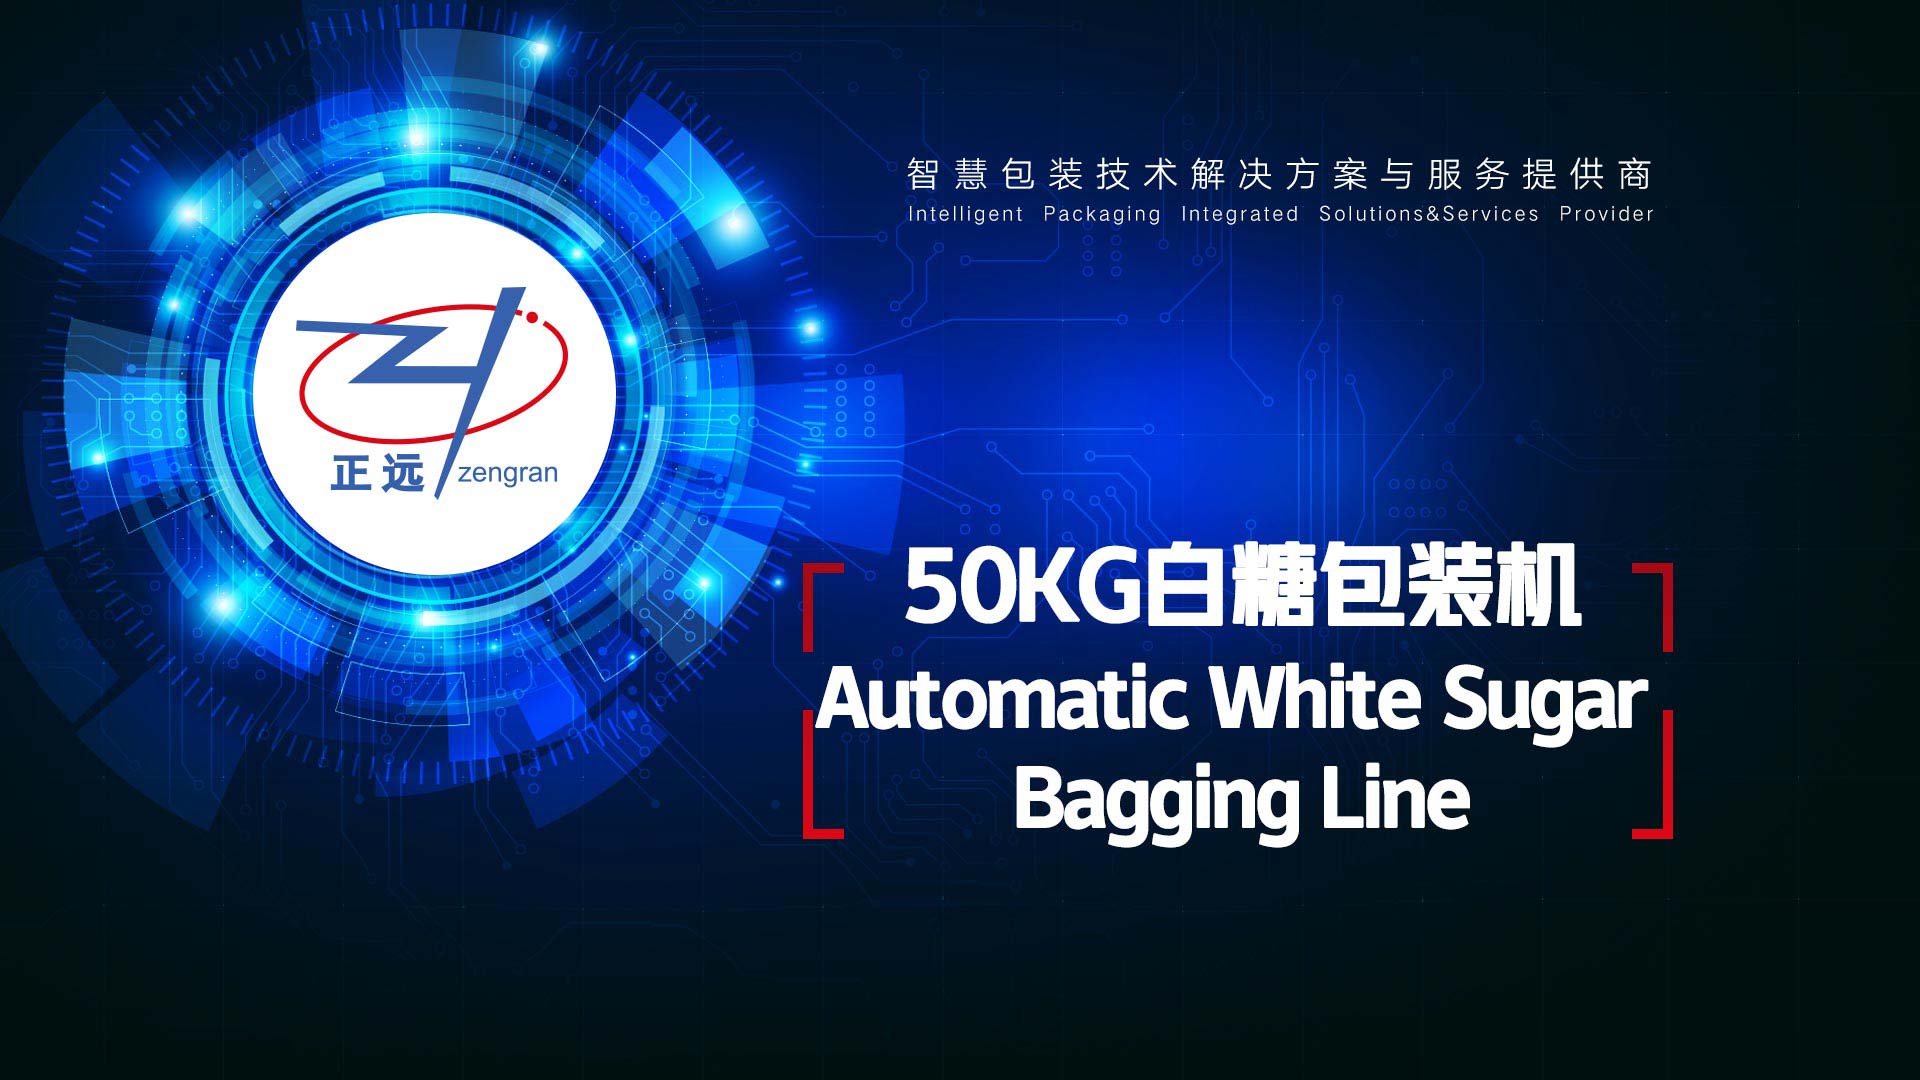 Sugar Industry Customer Cases: 50KG Bag Packaging Machine Line